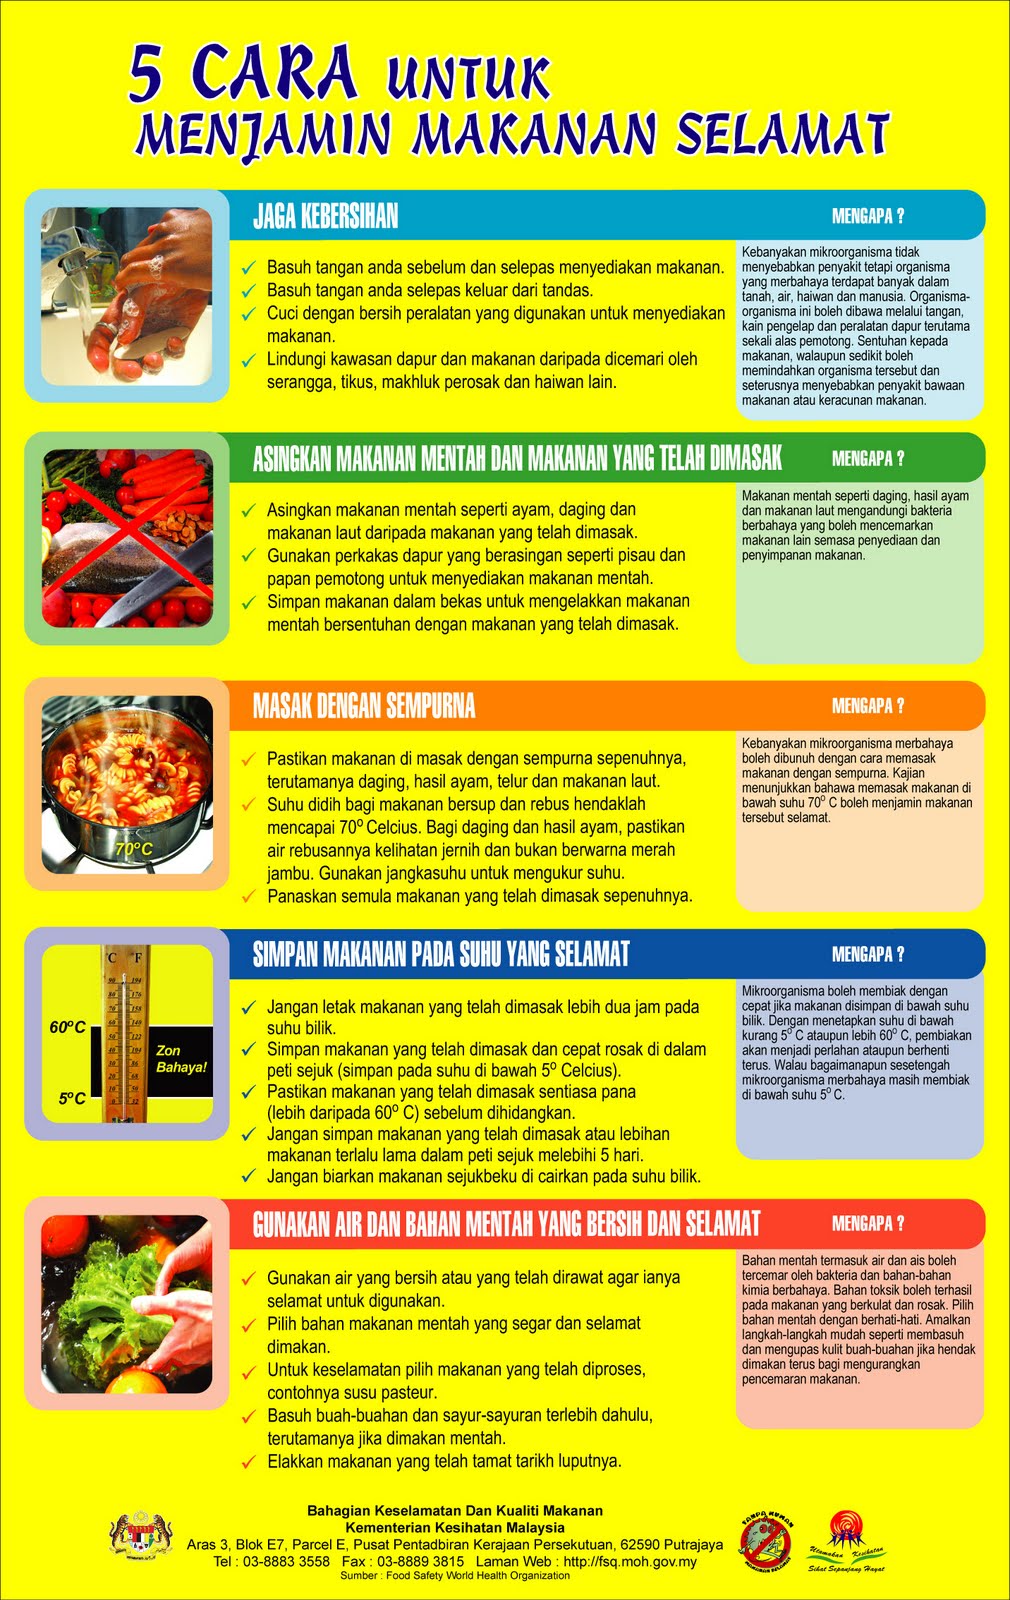 5-cara-menjamin-keselamtan-makanan